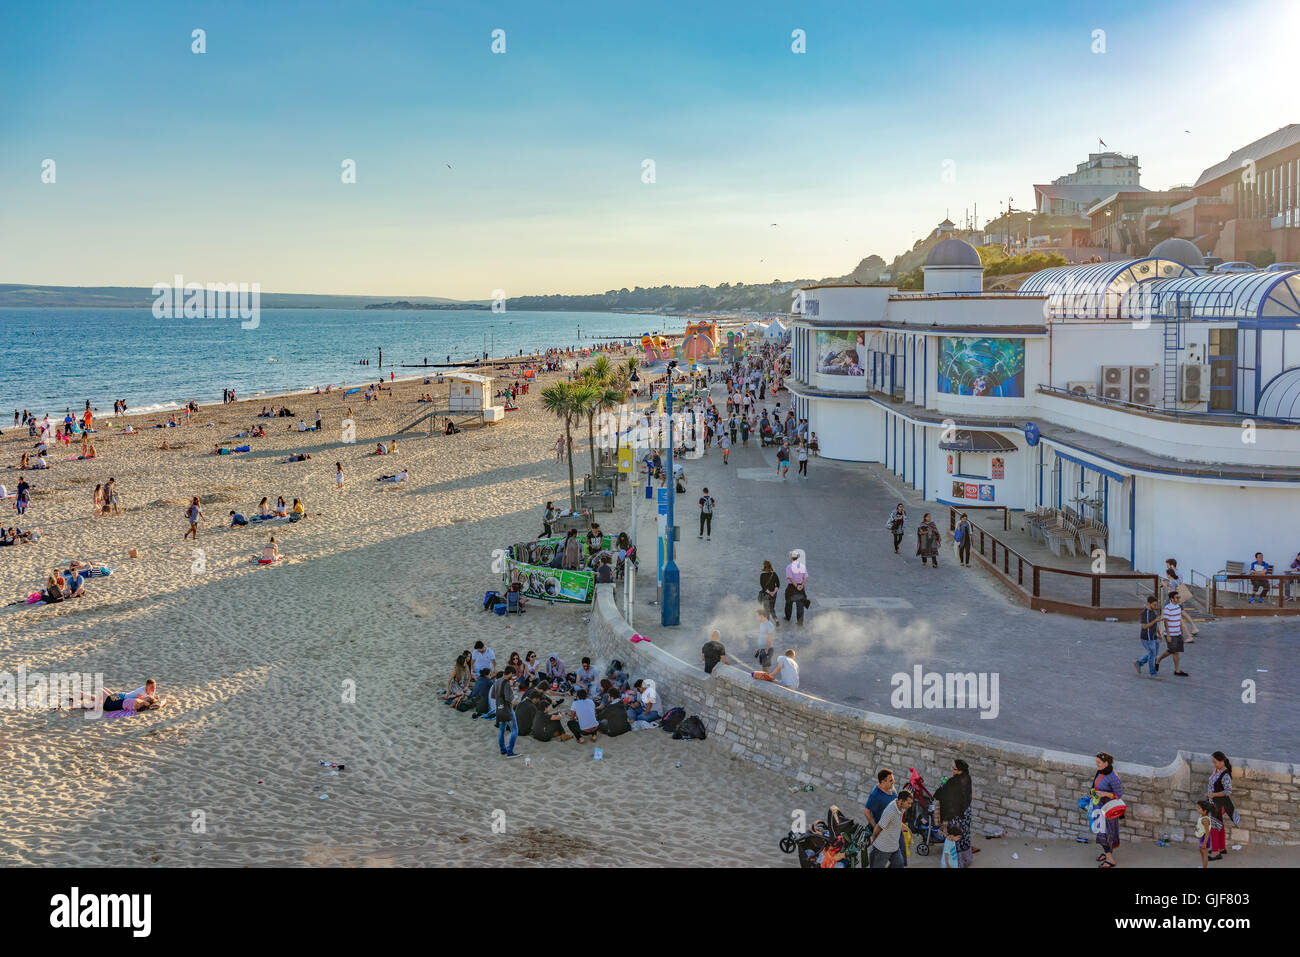 Excursionnistes et les vacanciers profiter du temps chaud et les eaux claires de la plage de Bournemouth sur la côte sud du Royaume-Uni. Banque D'Images